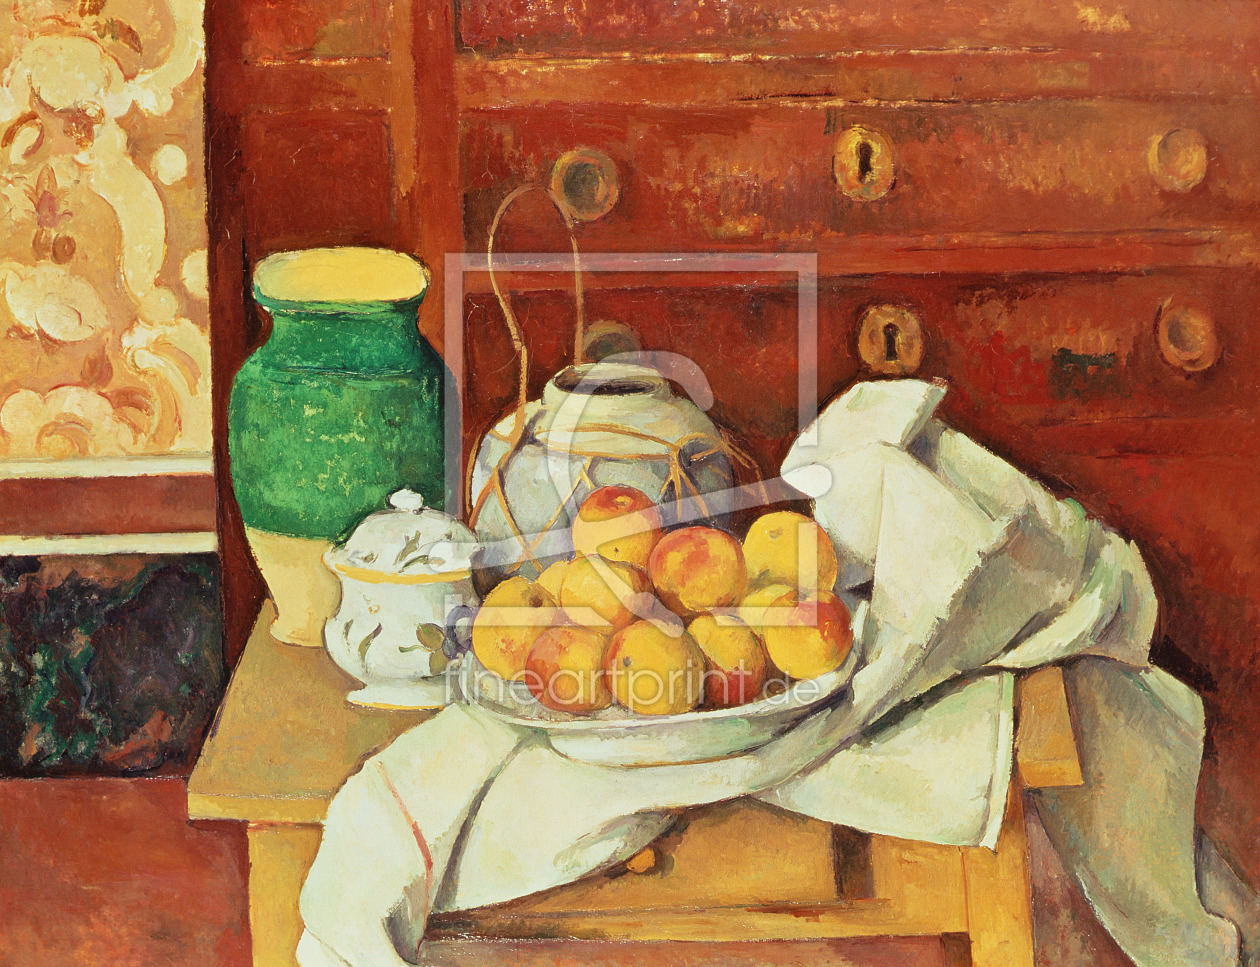 Bild-Nr.: 31002188 Still Life with a Chest of Drawers, 1883-87 erstellt von Cezanne, Paul